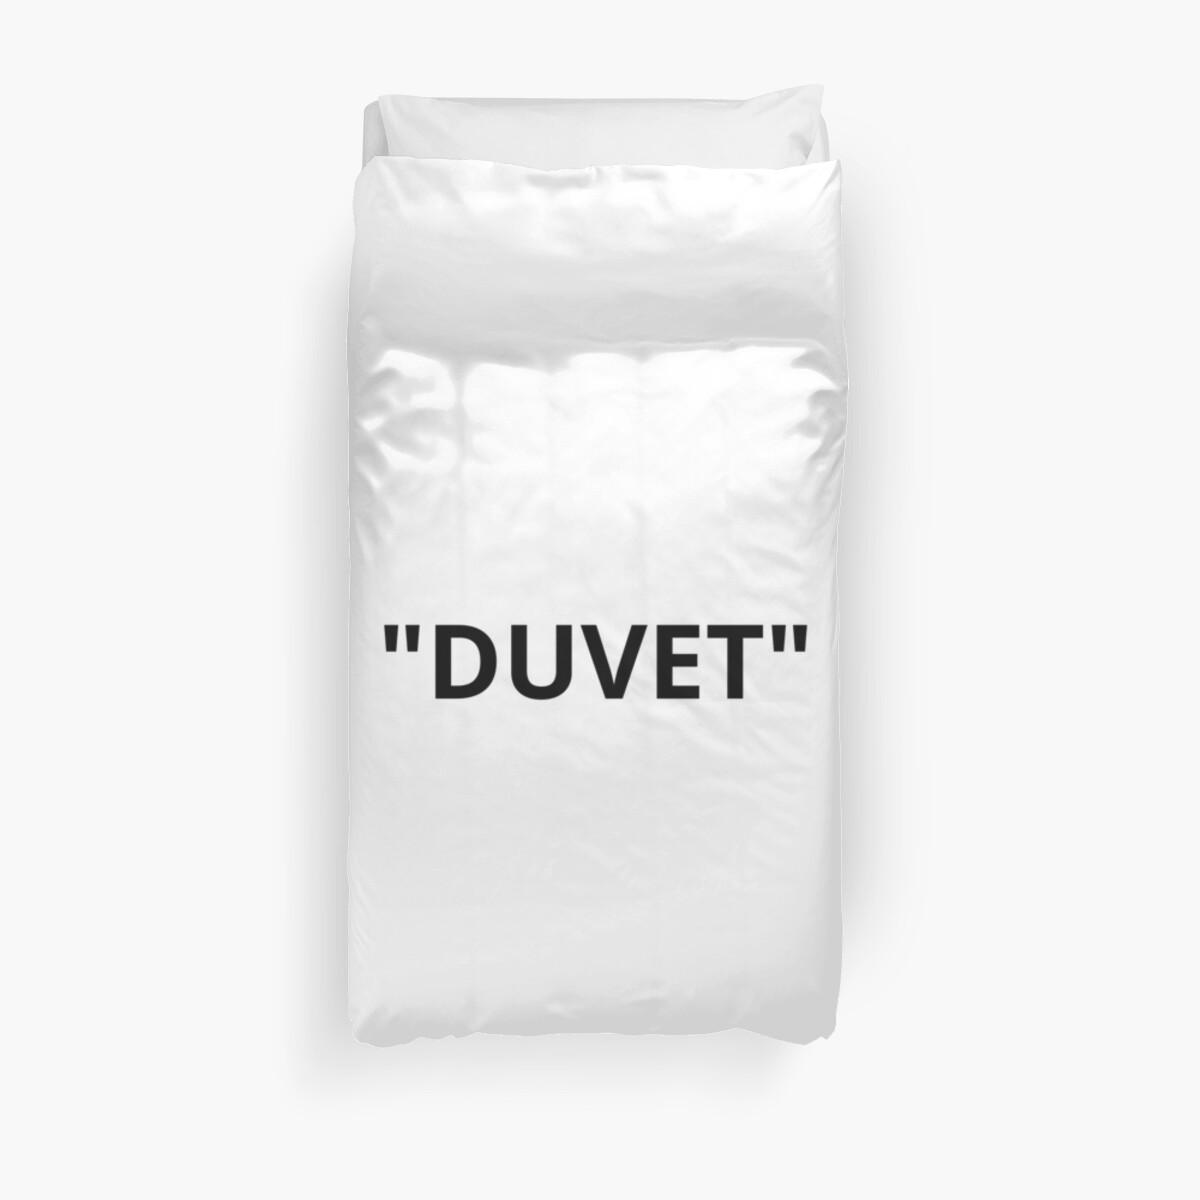 "Duvet" Duvet Cover